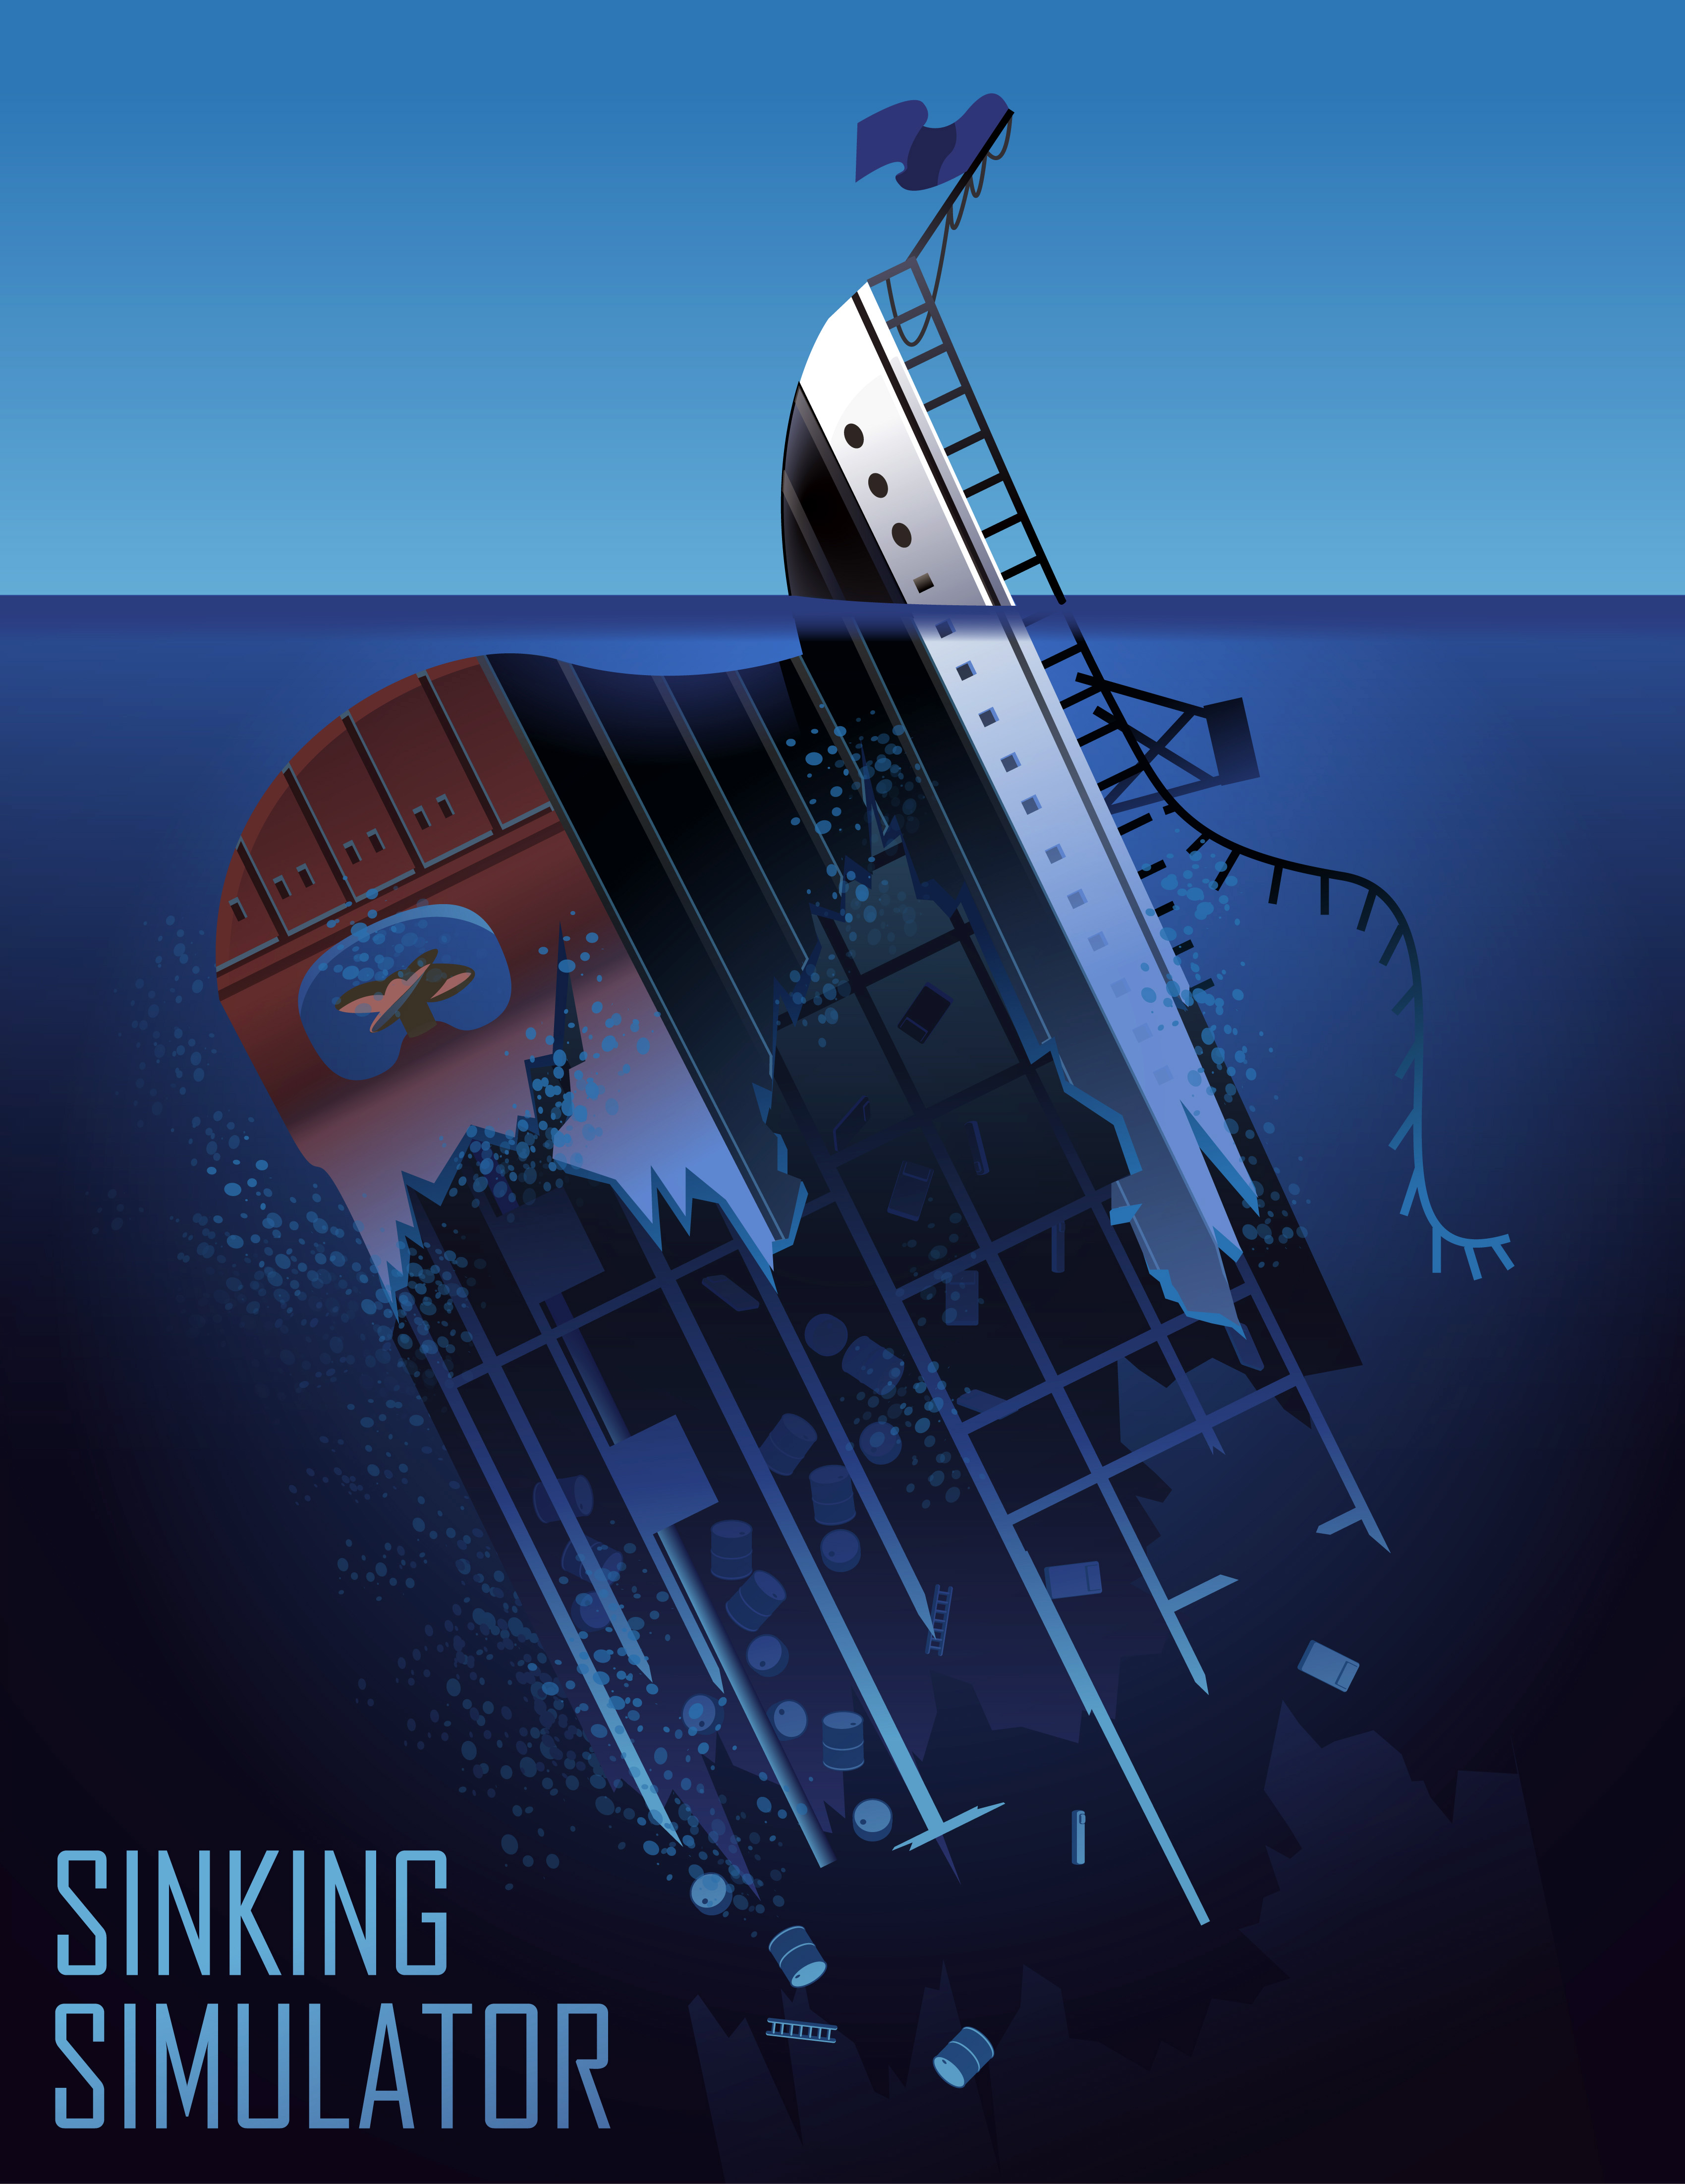 Sinking ship simulator download